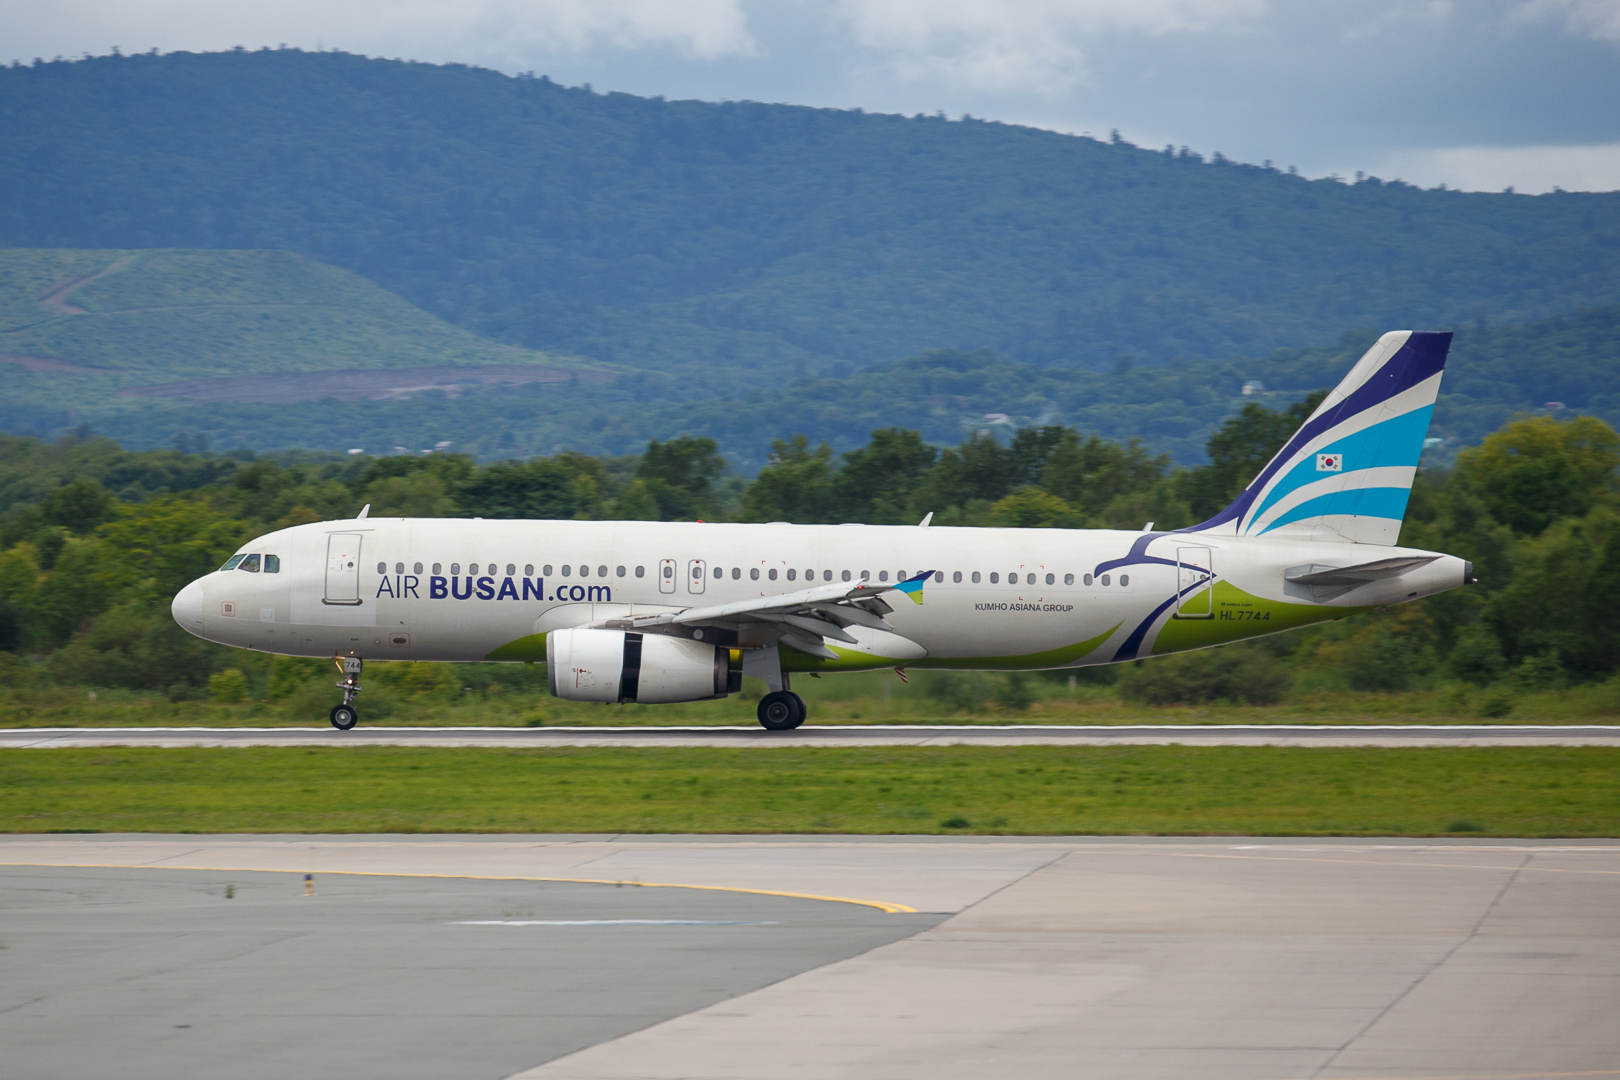 Из Международного аэропорта Владивосток открываются новые рейсы авиакомпании Air Busan в Сеул